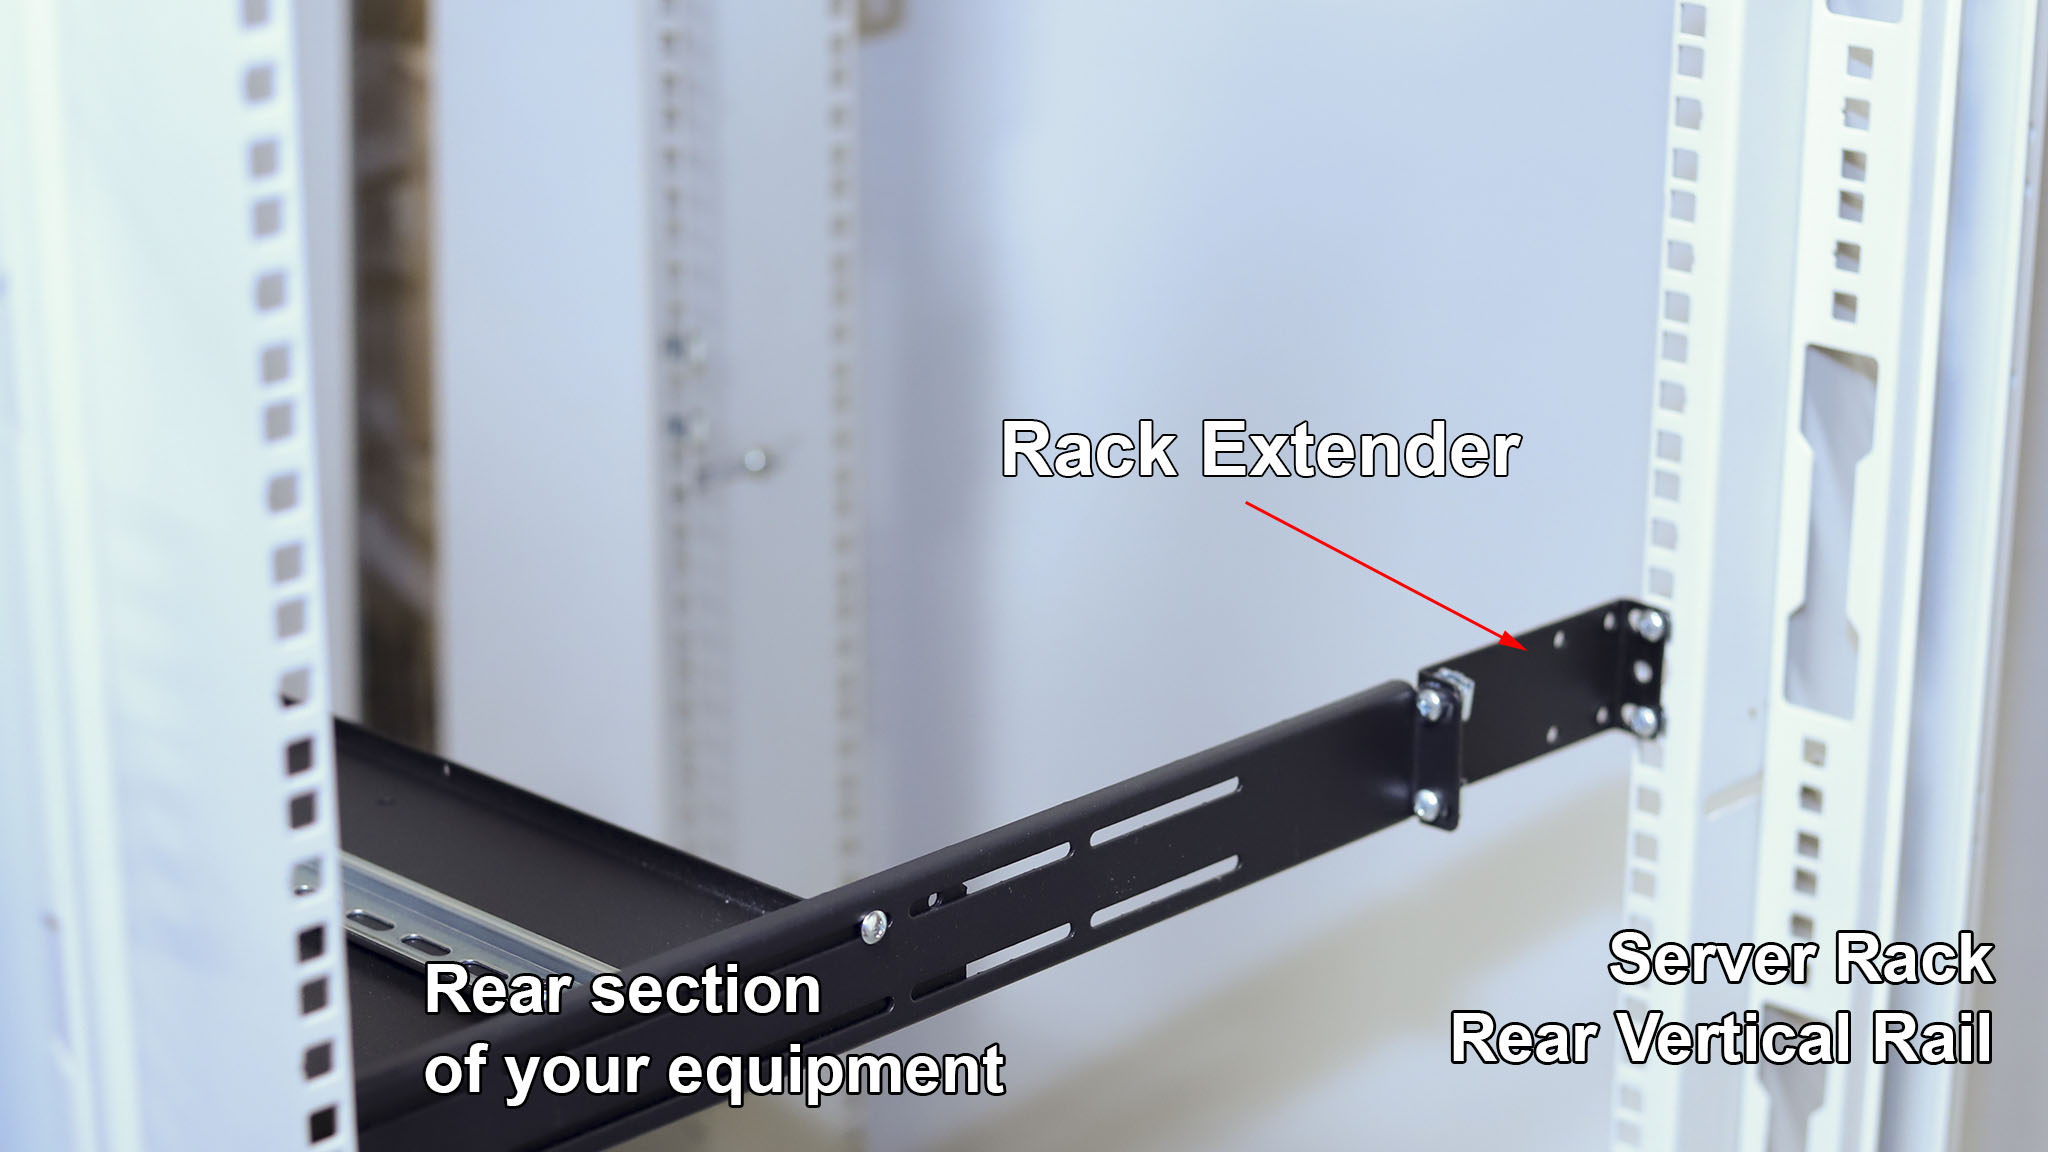 What is IAB106V10-4U rack extender